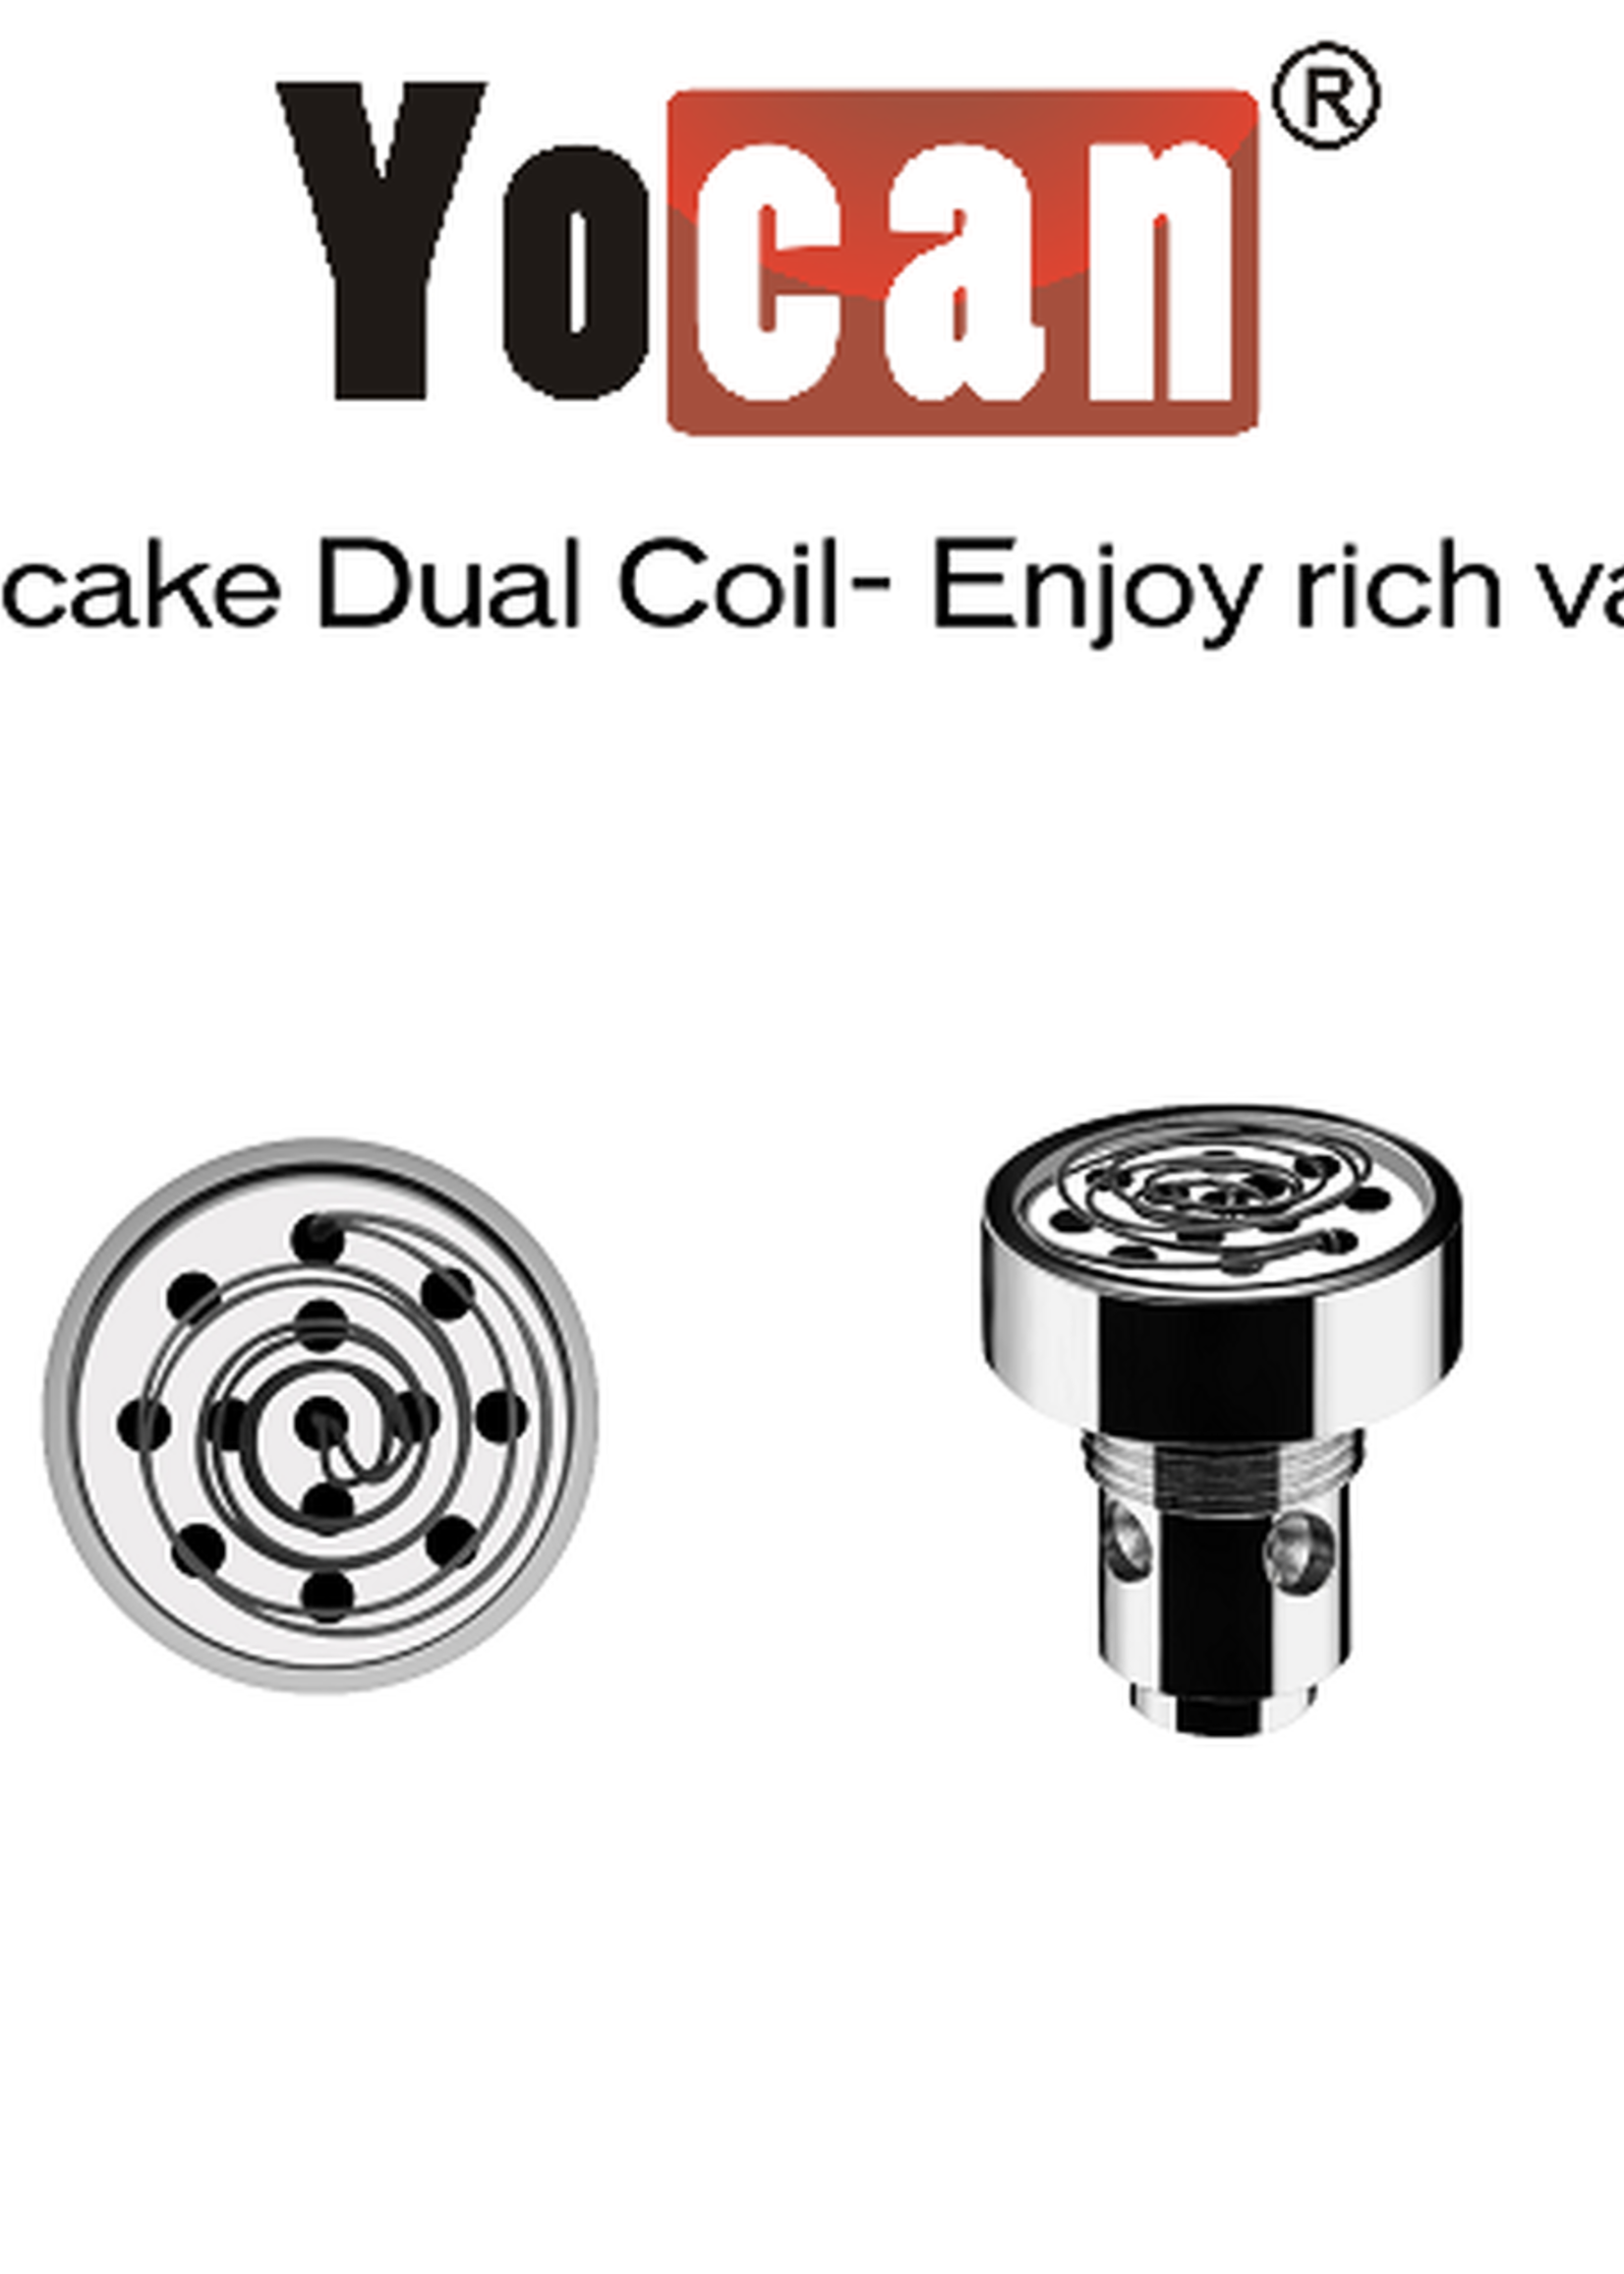 Yocan Yocan Evolve D single coil